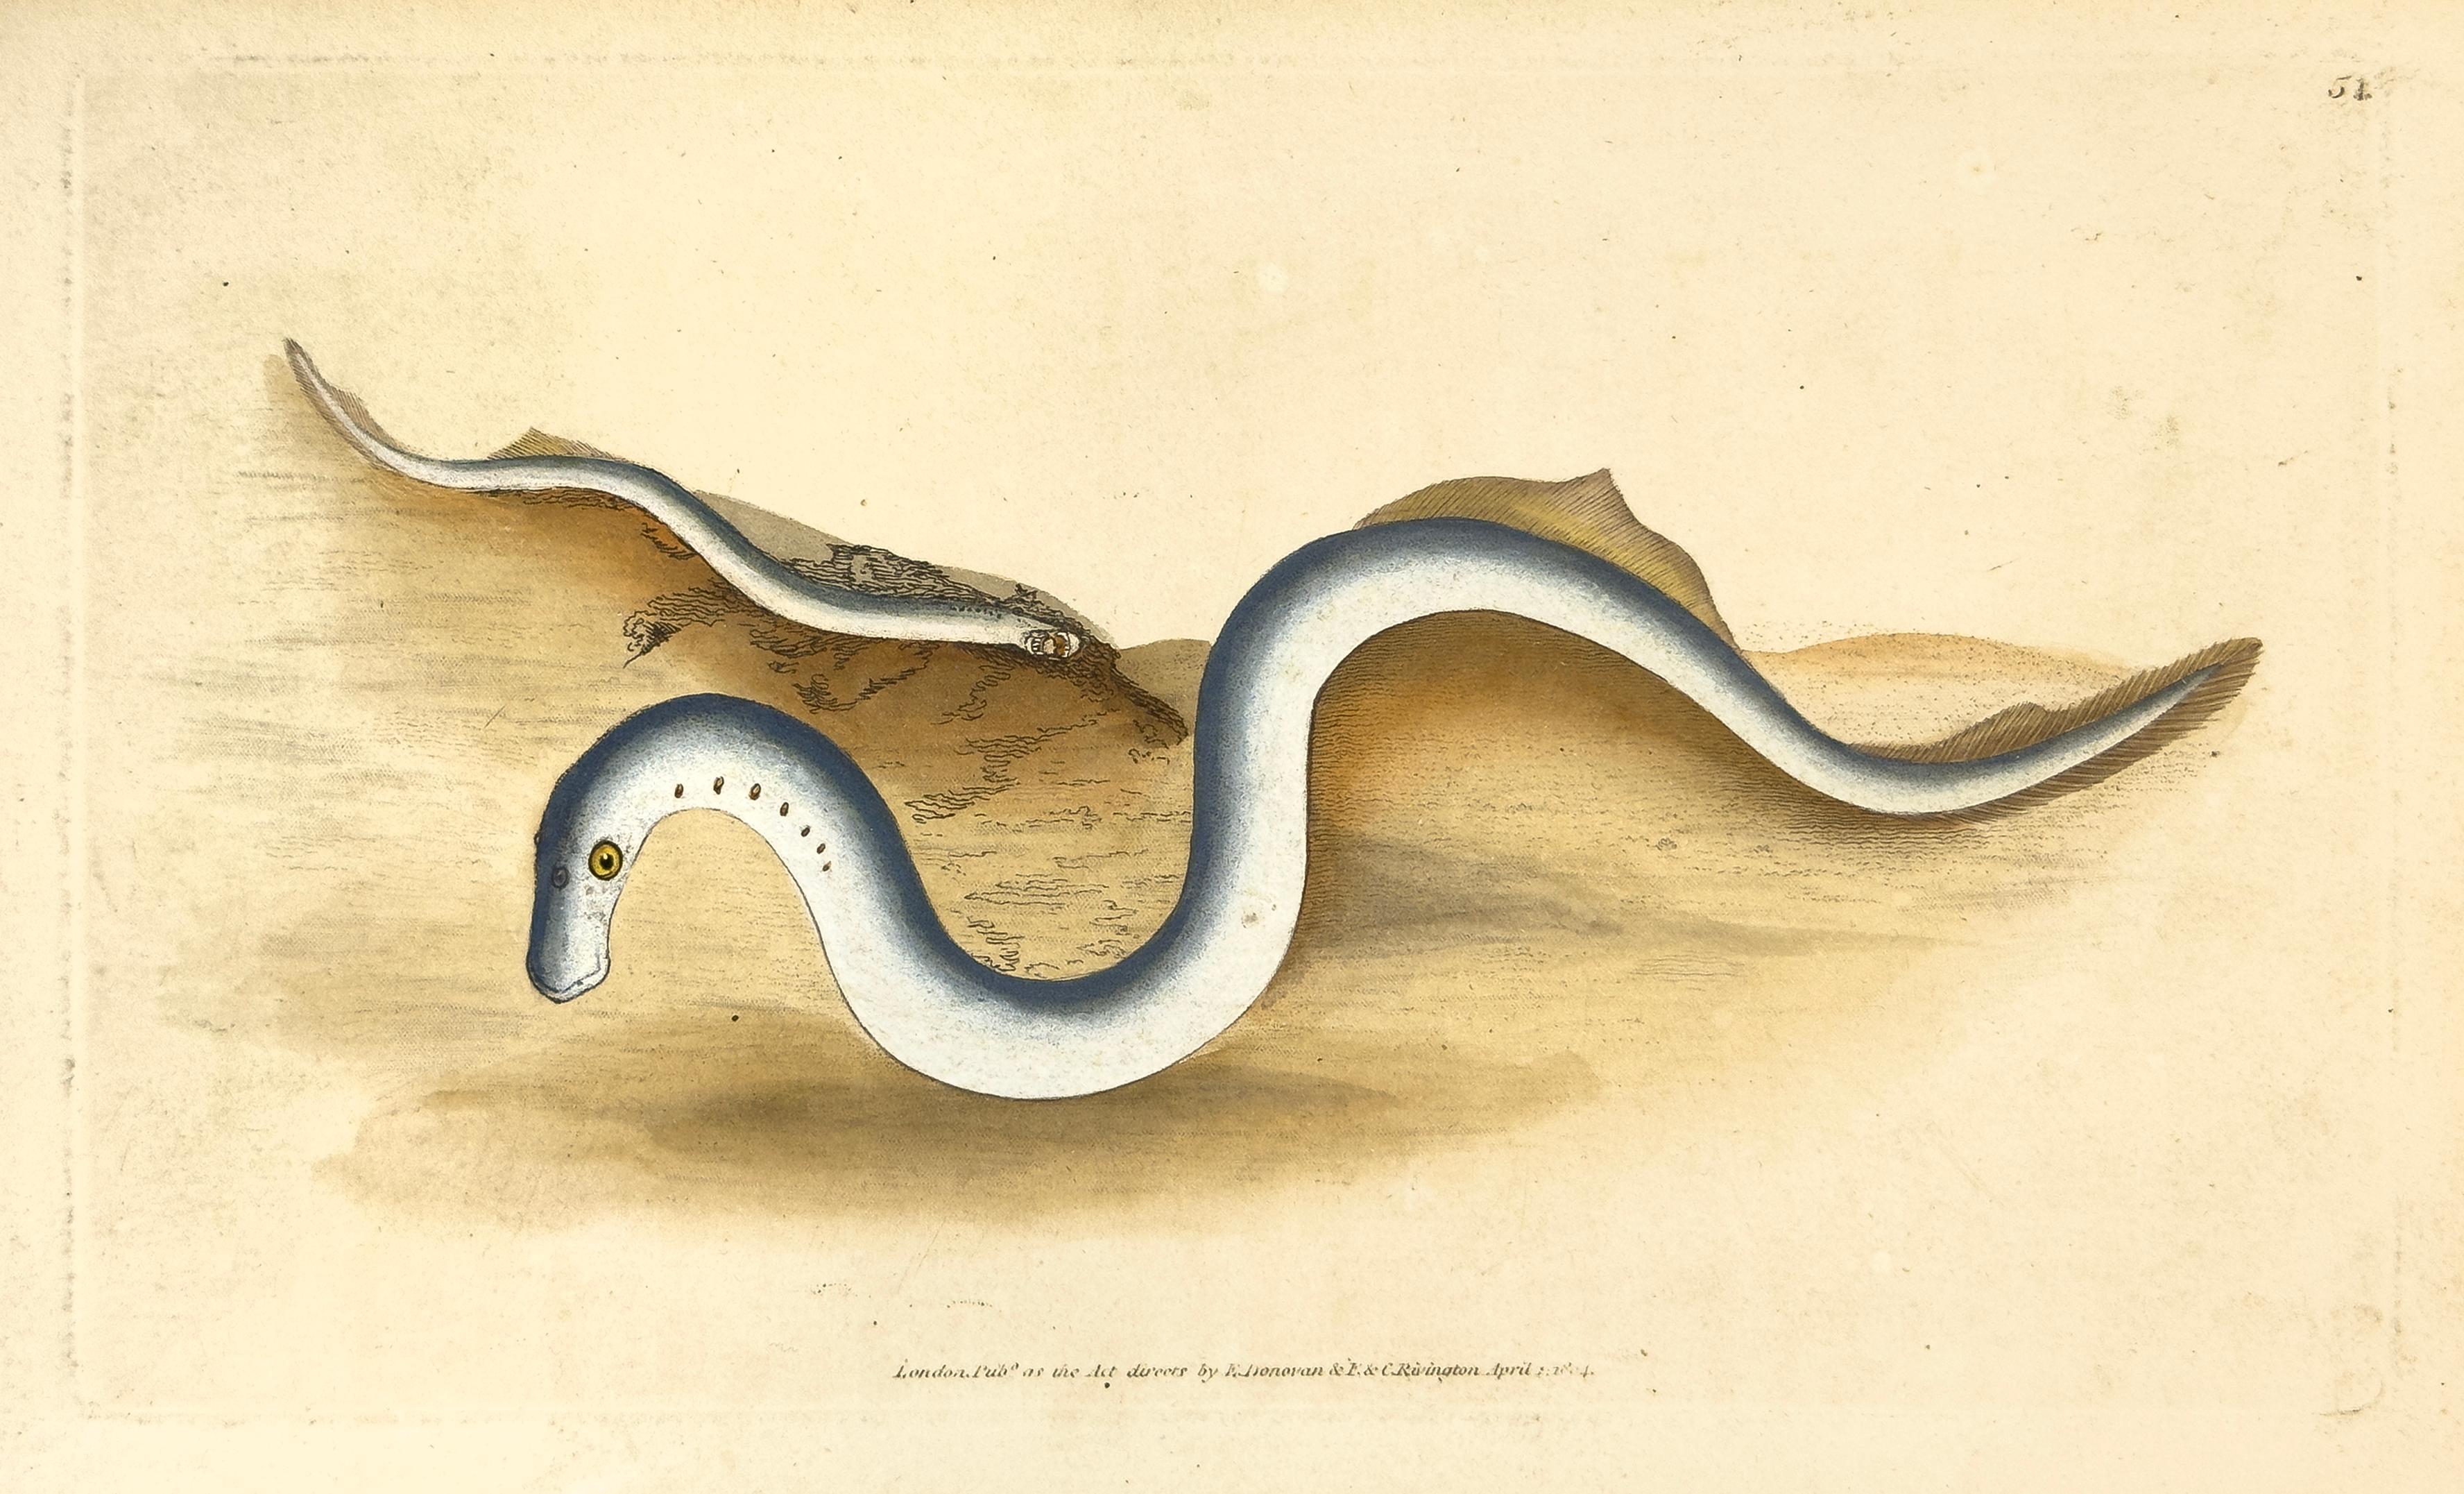 Edward Donovan Print - 54: Petromyzon fluviatilis, Lampern, or Lesser Lamprey